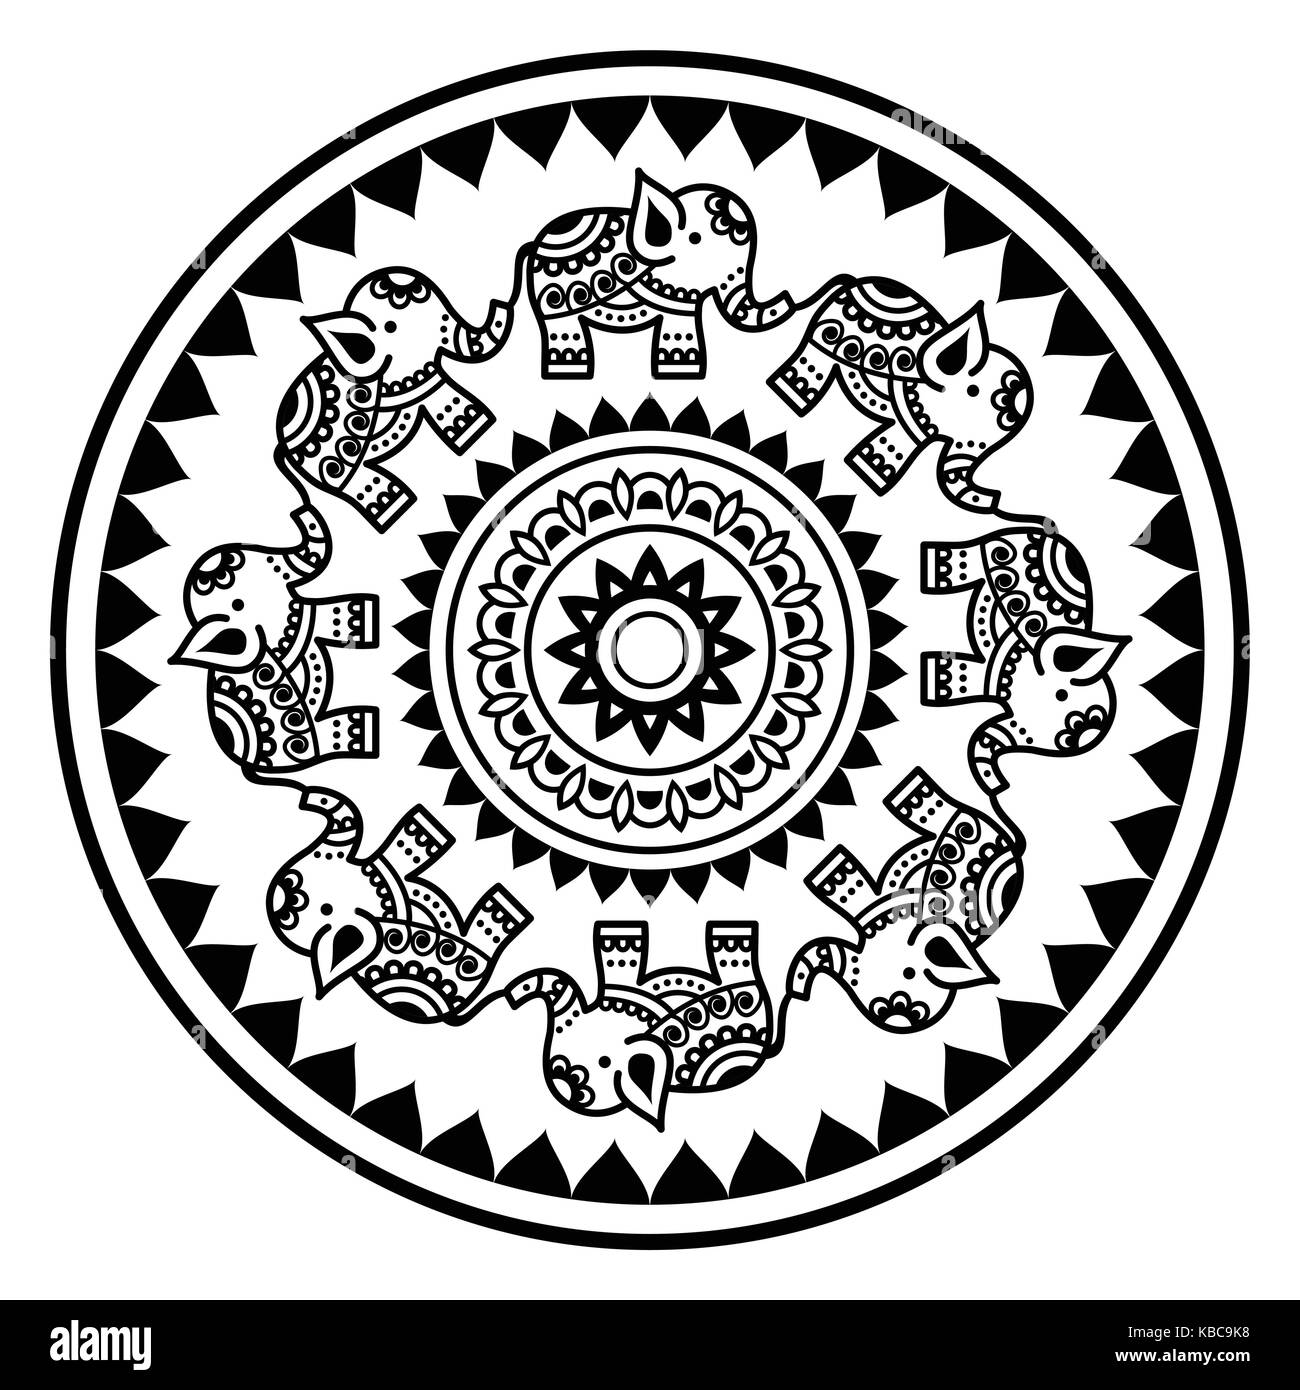 Mandala indien avec les éléphants et les formes abstraites, mehndi - tatouage au henné indien modèle vectoriel style Illustration de Vecteur